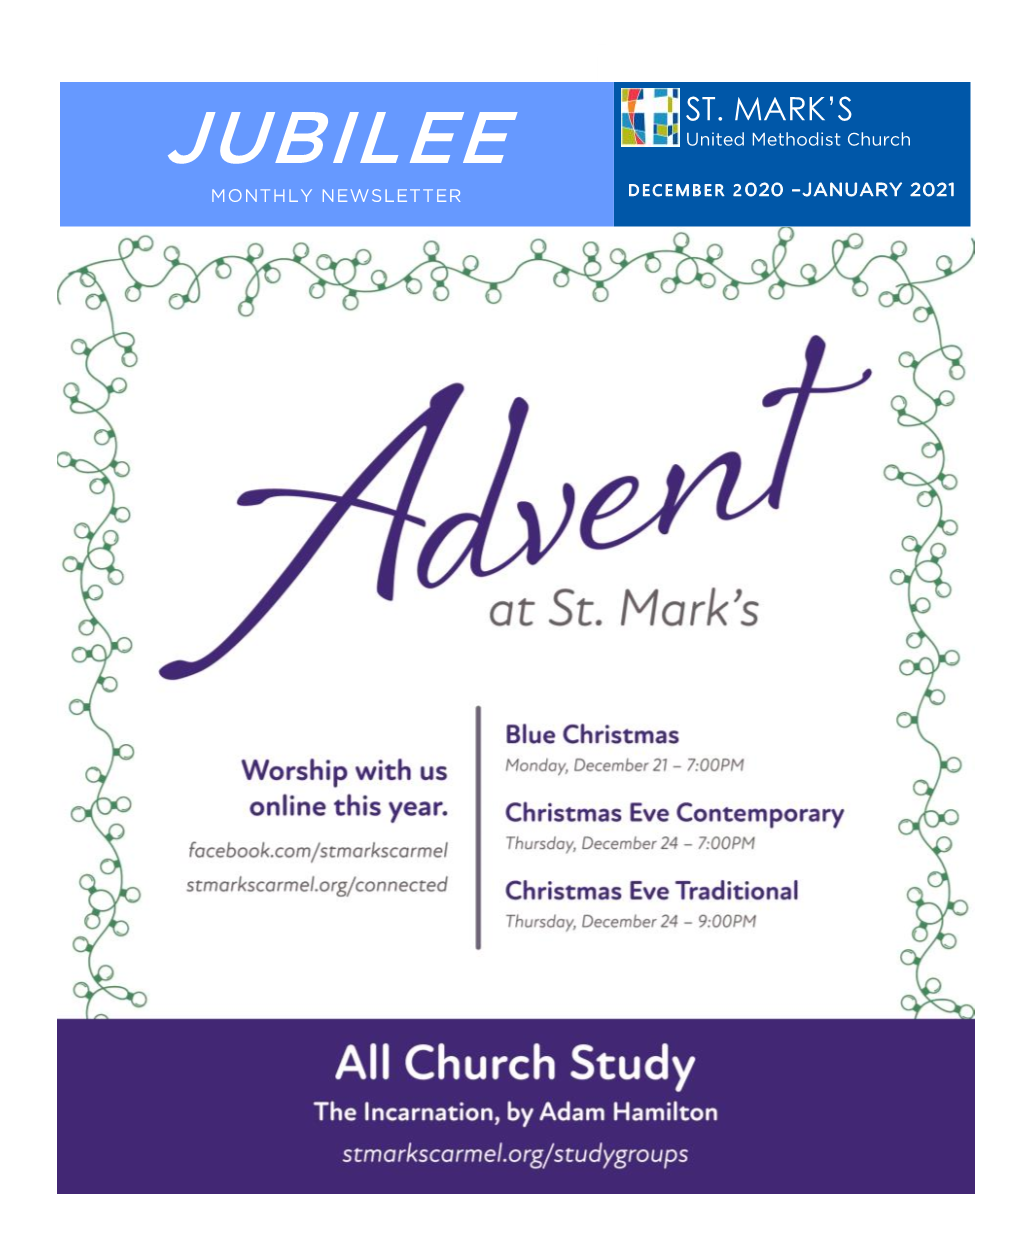 JUBILEE United Methodist Church MONTHLY NEWSLETTER D E C E M B E R 2 020 –JANUARY 2021